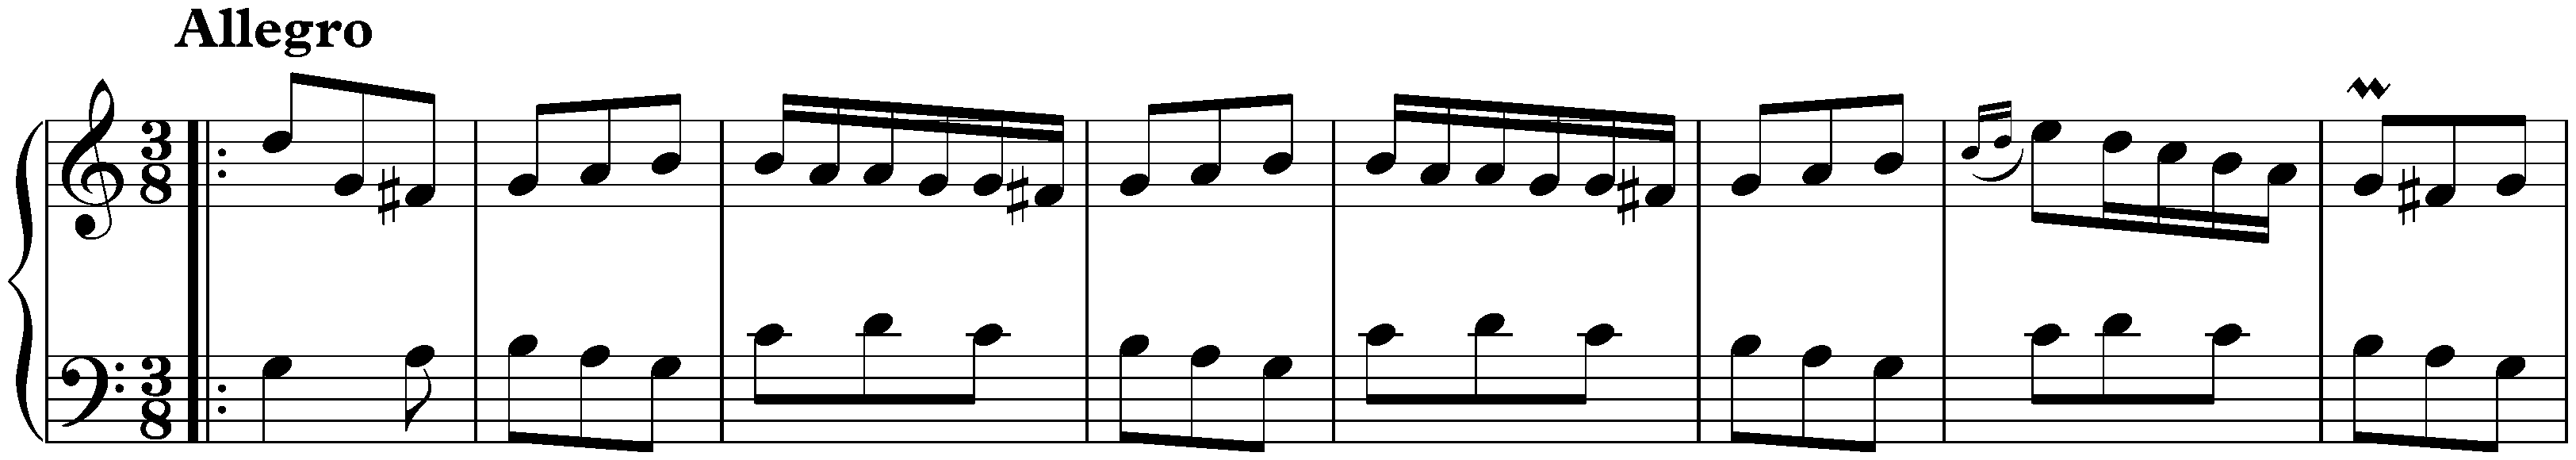 Sonata in C major, K. 170